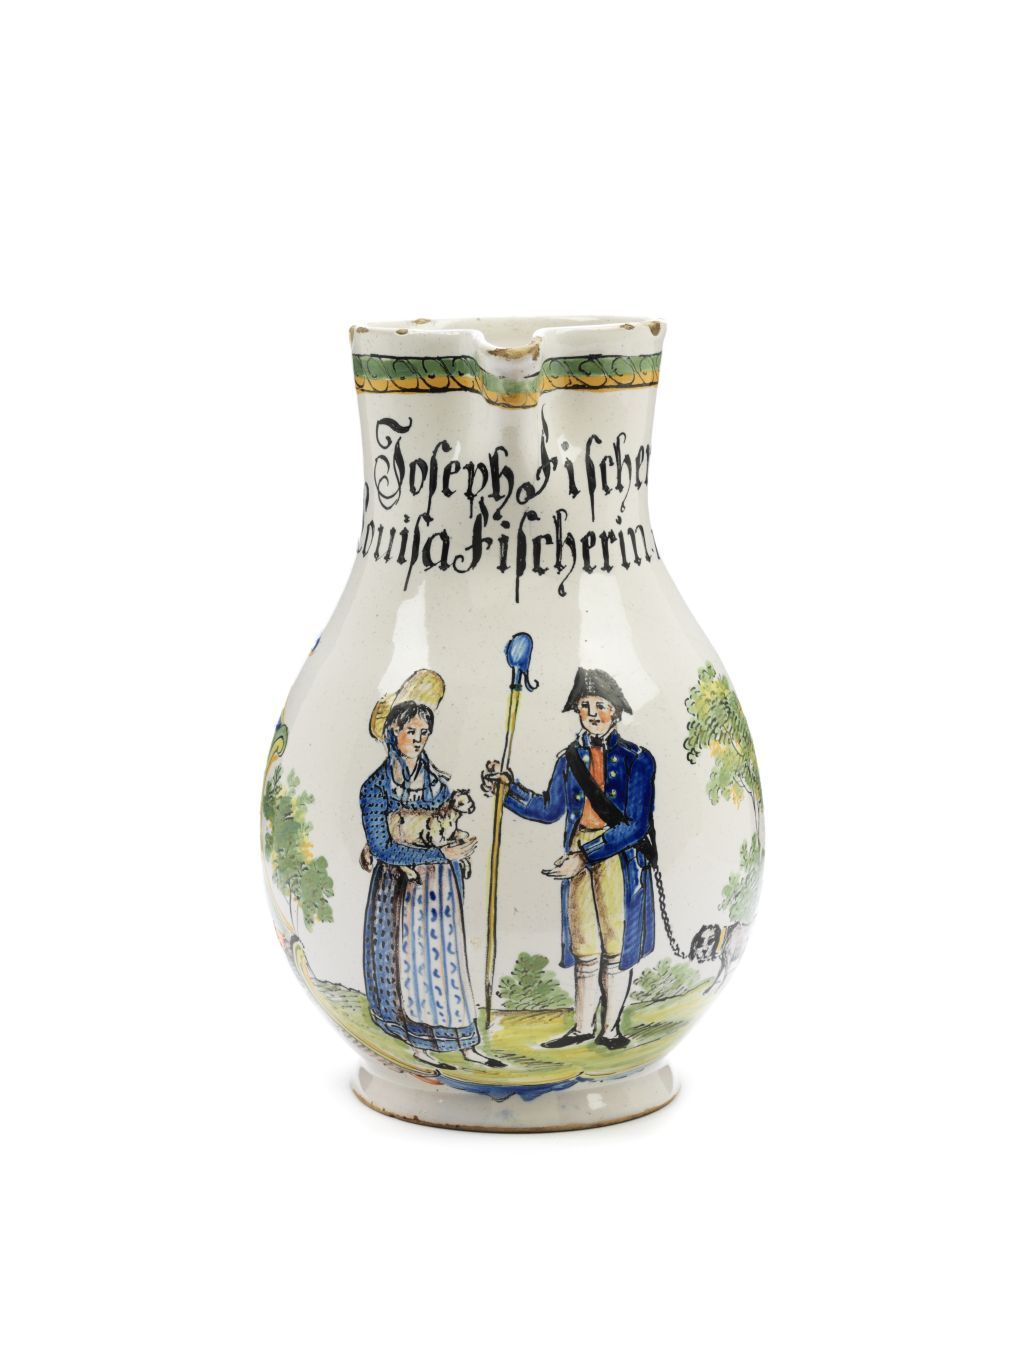 Durlacher-Fayence-Hochzeitskrug-1820-datiert